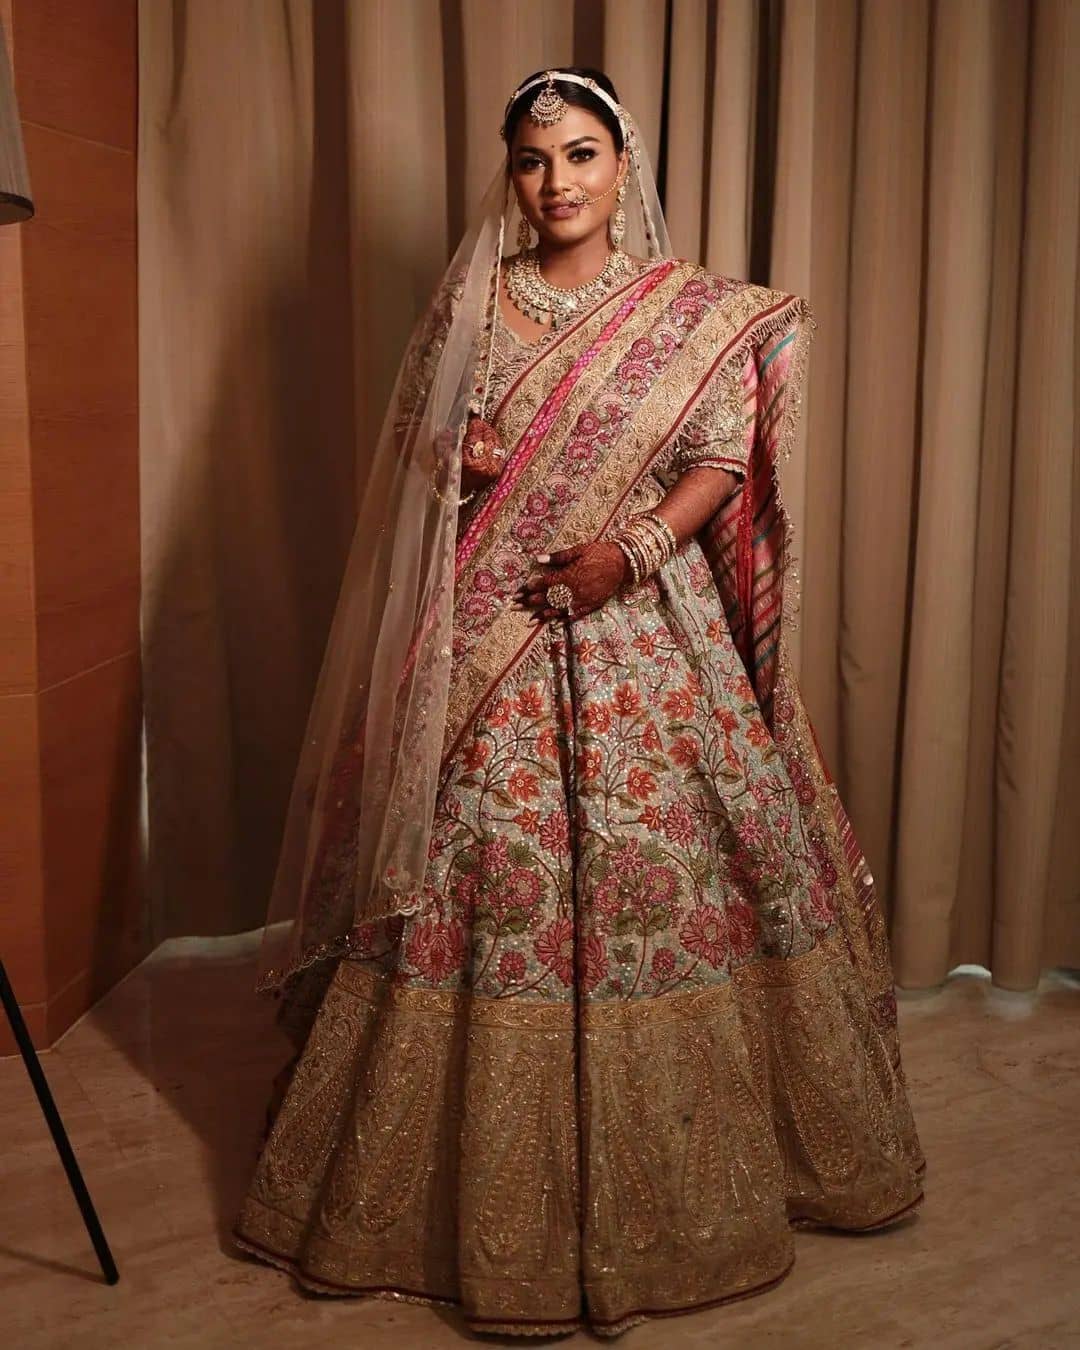 Teal Blue Soft Net Stylish Wedding Reception Lehenga Choli @Indian Couture